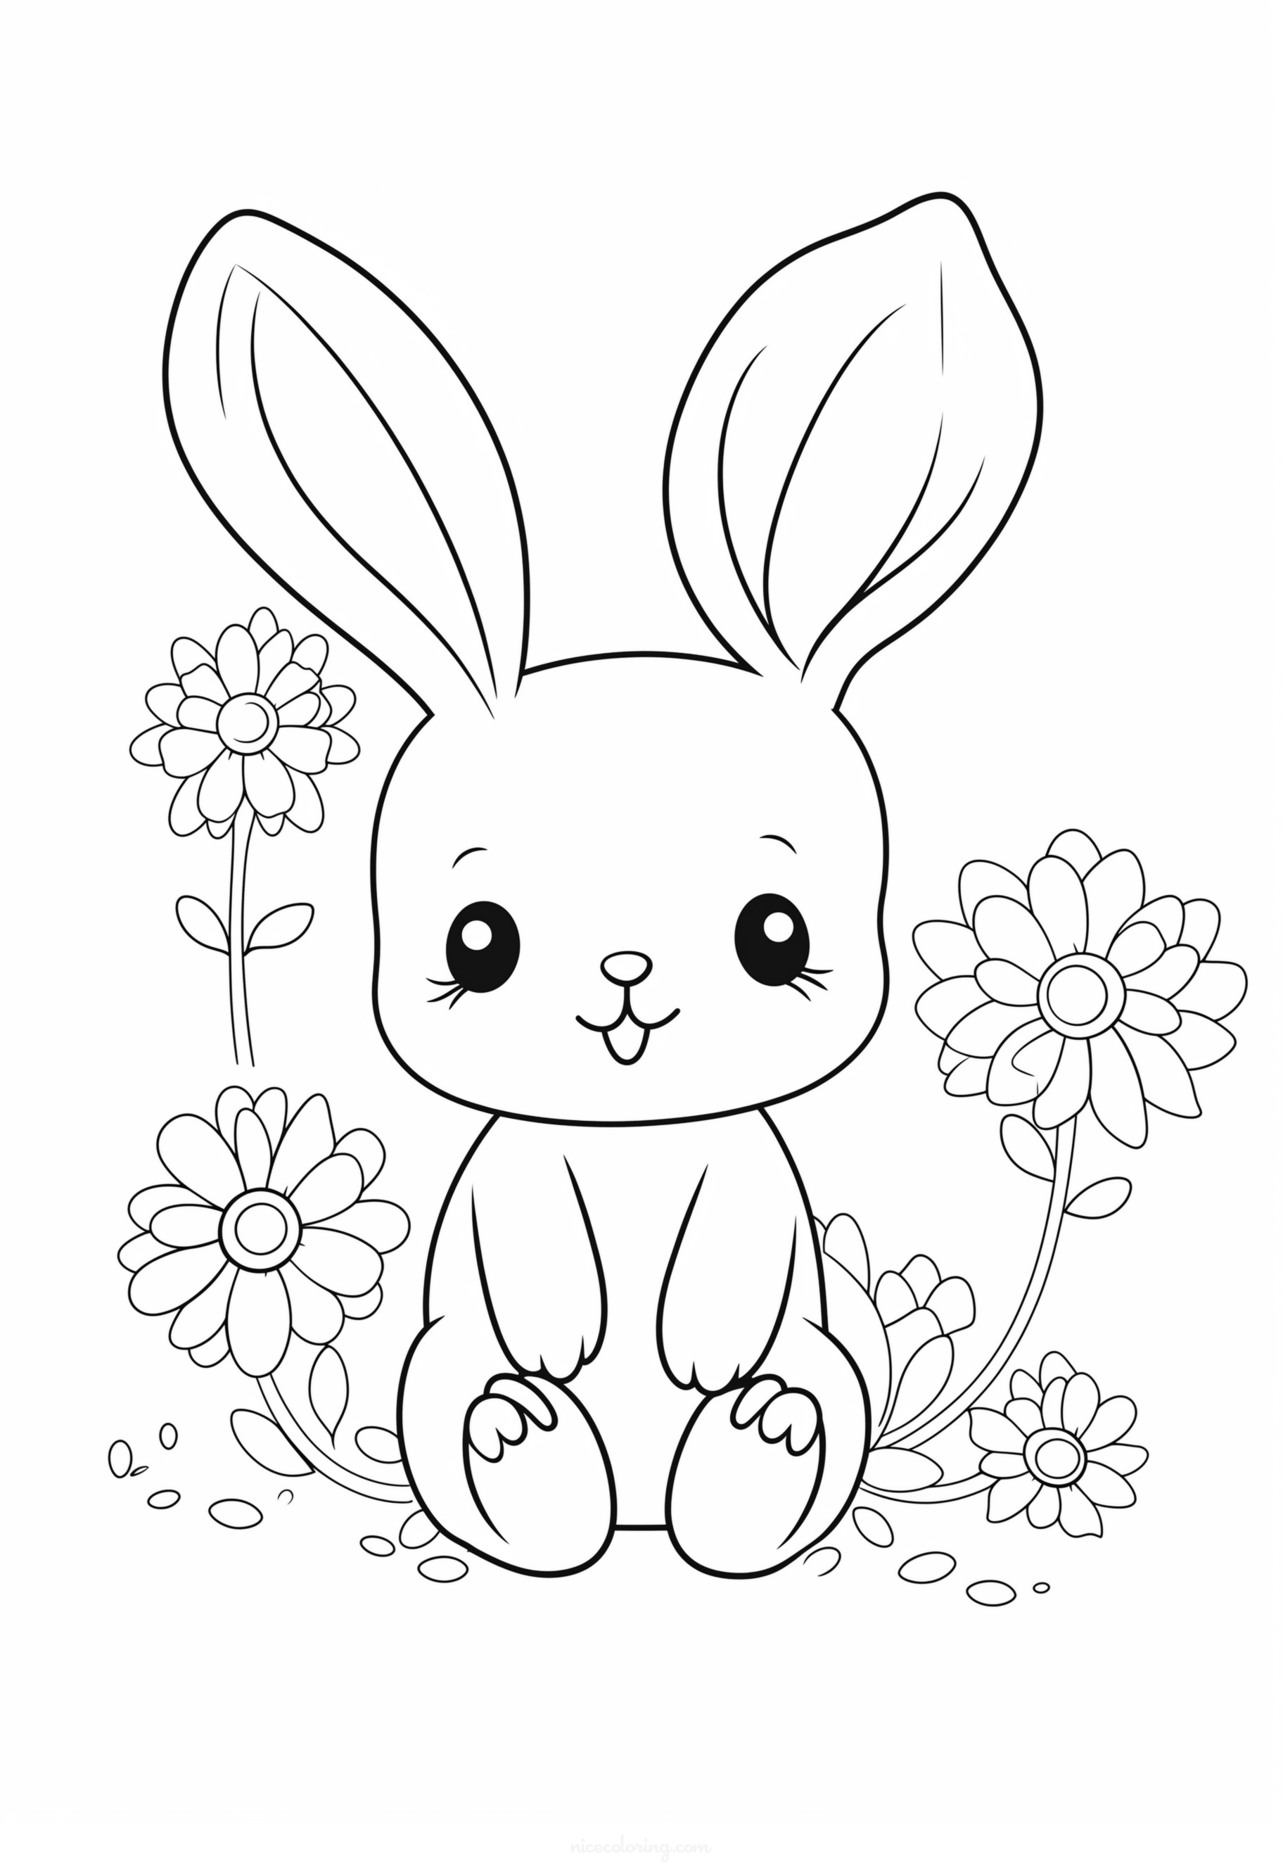 thỏ đang ngồi giữa vườn hoa